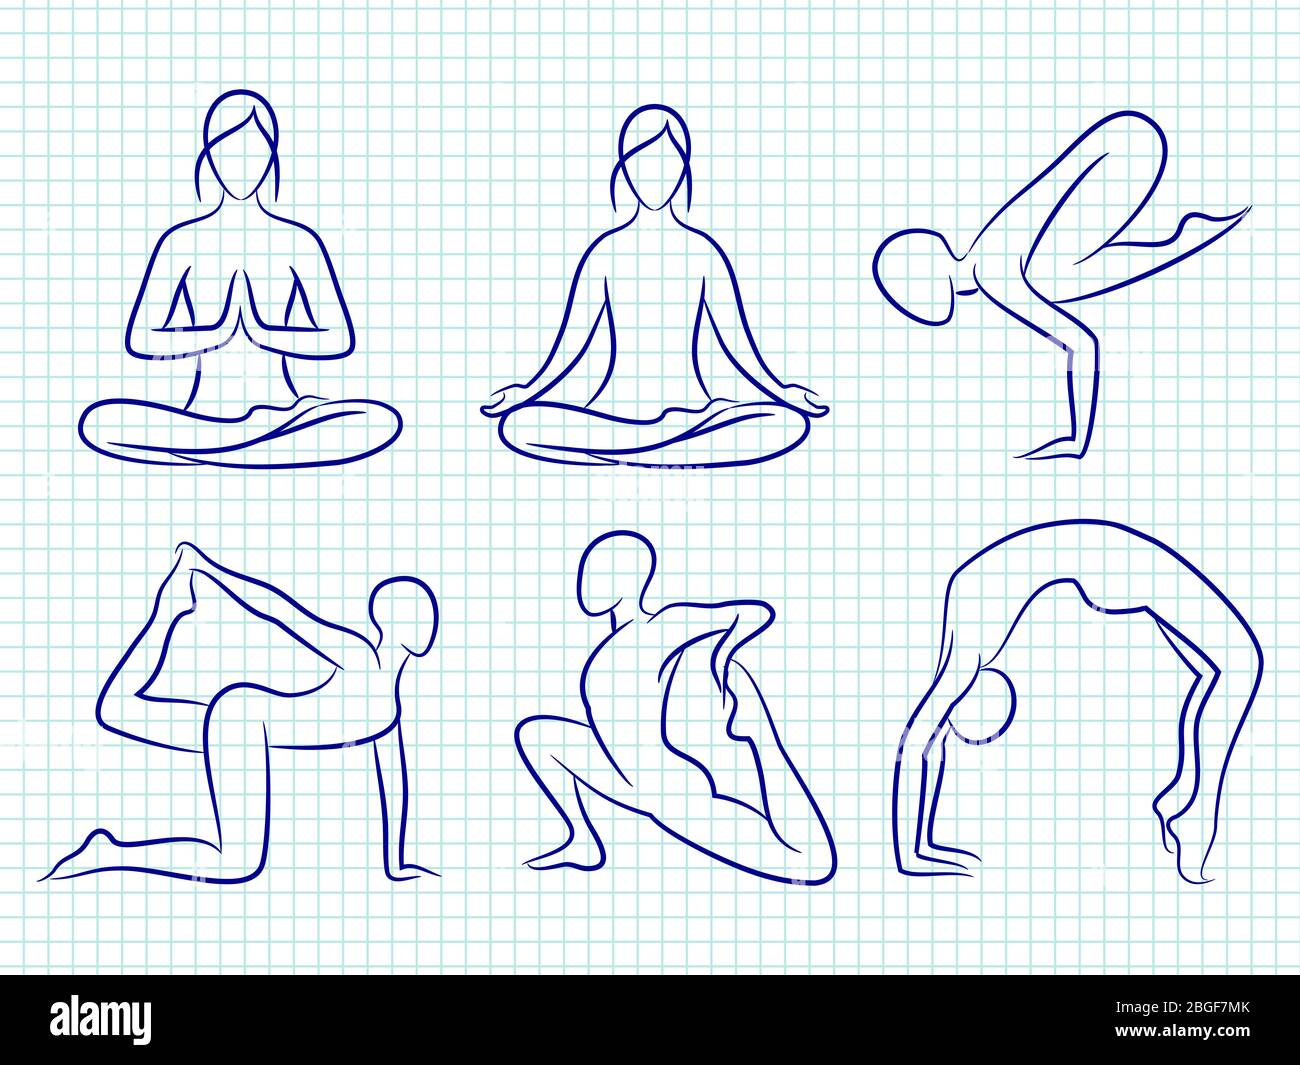 Fitness Yoga Pilates handgezeichnete Silhouetten des Sets. Vektorgrafik Stock Vektor